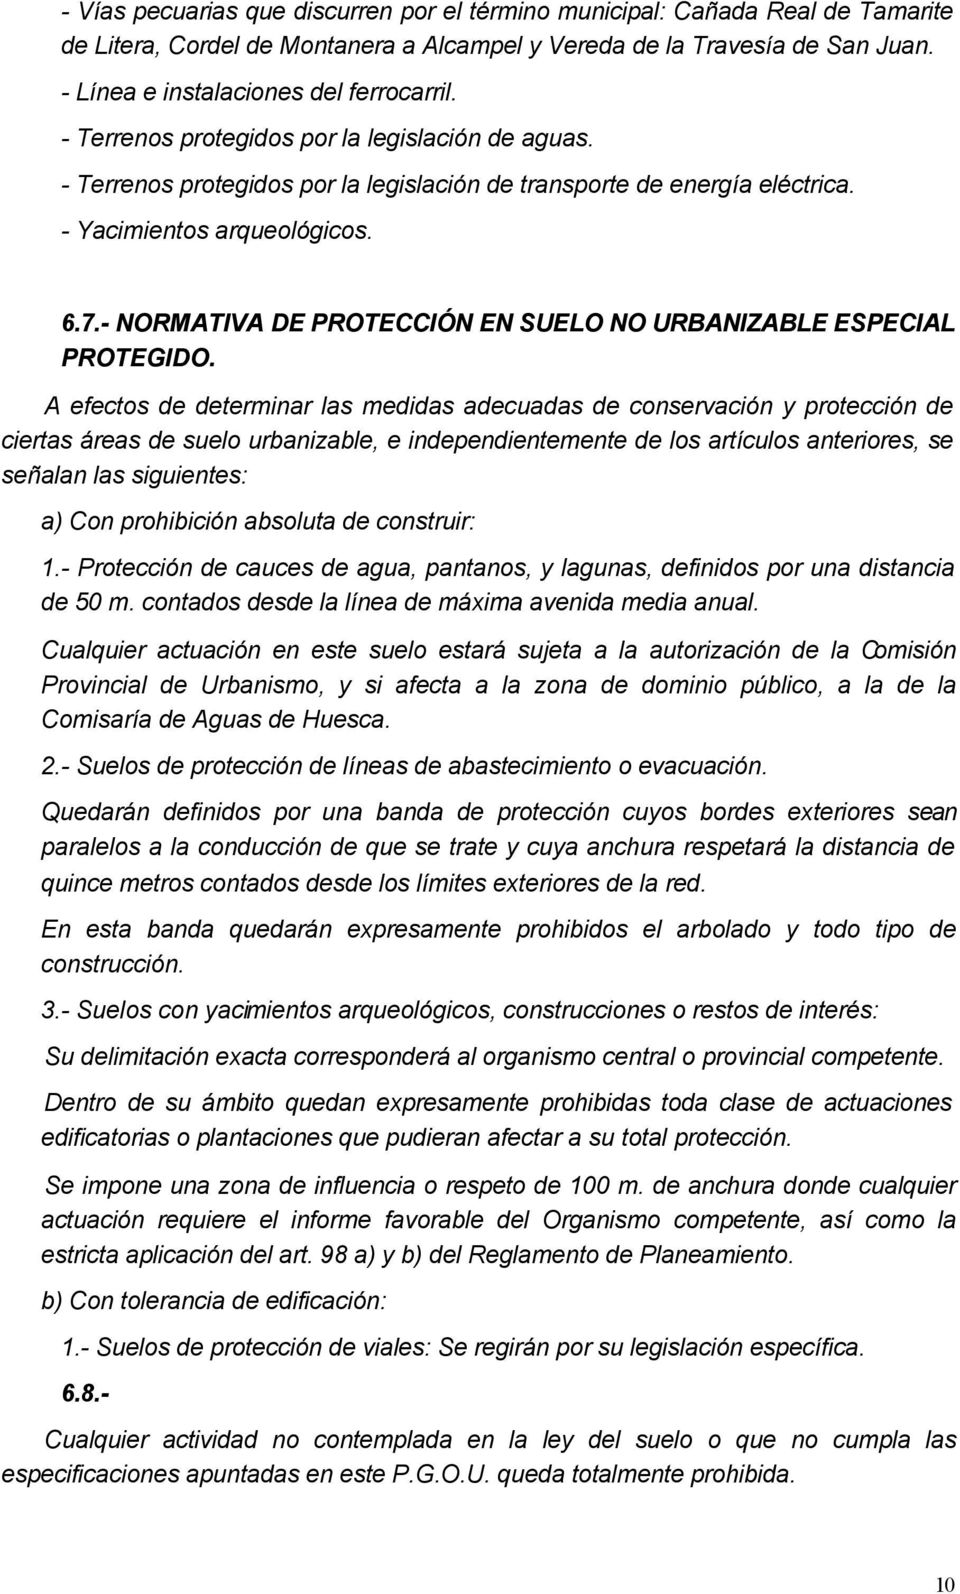 - NORMATIVA DE PROTECCIÓN EN SUELO NO URBANIZABLE ESPECIAL PROTEGIDO.